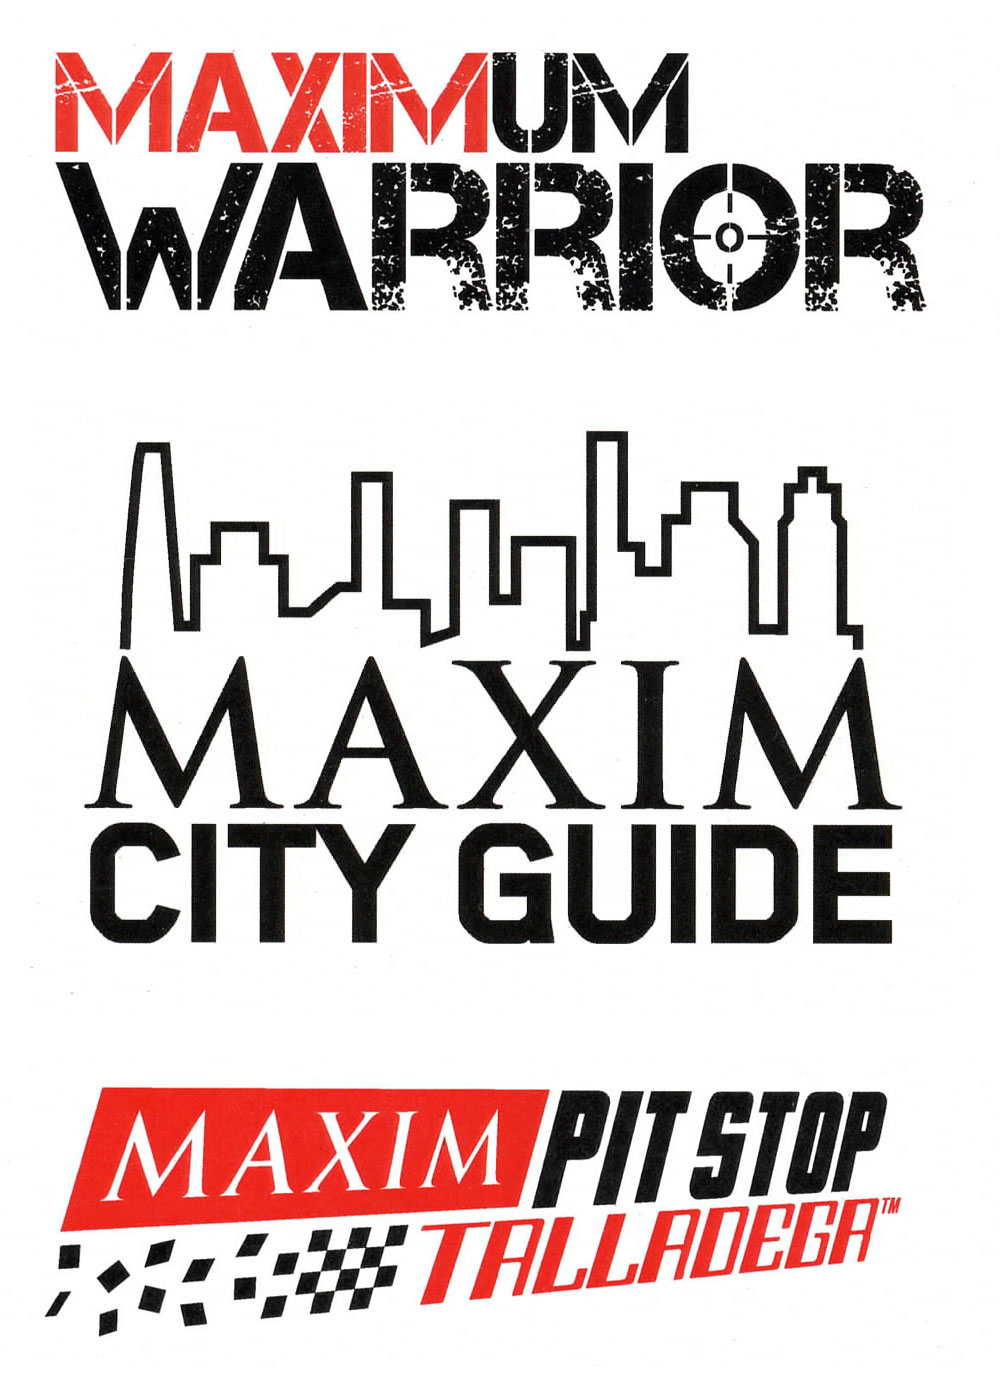 Maxim Magazin logos lockups